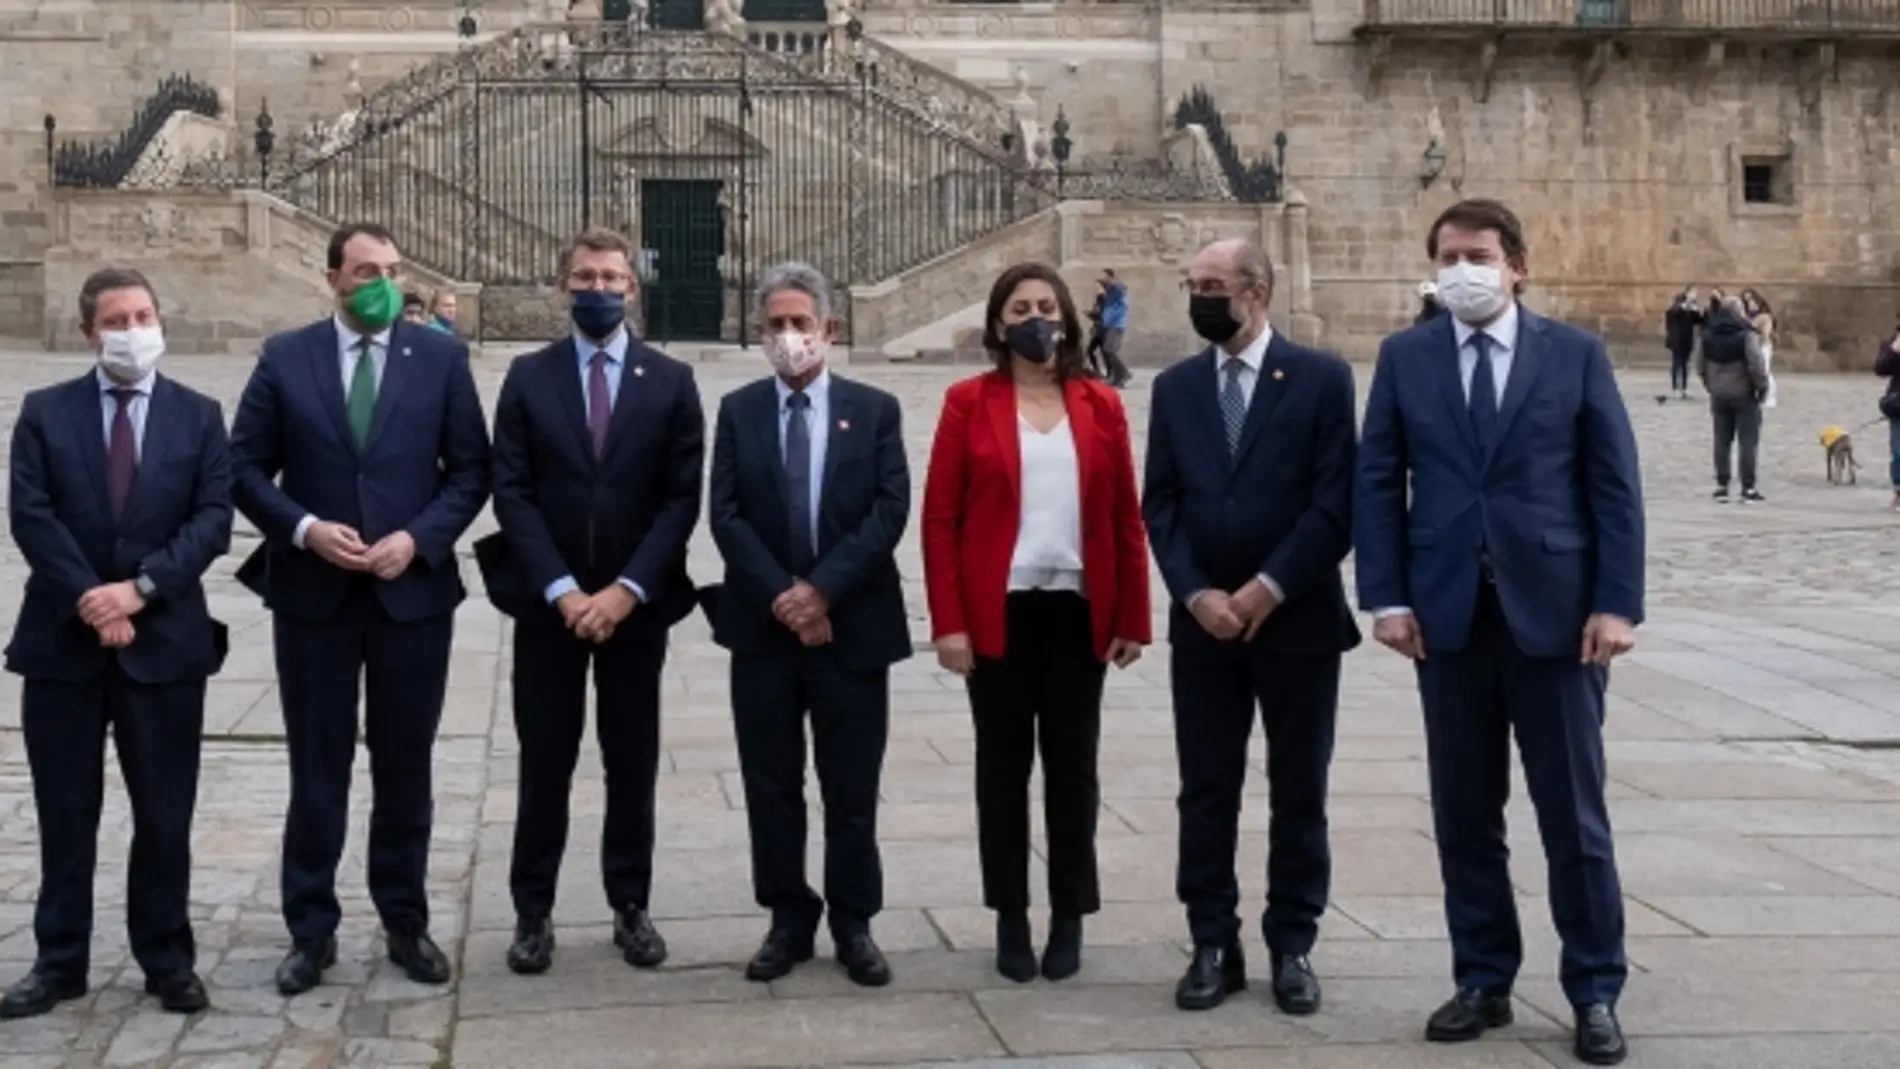 Los ocho presidentes se han reunido en Santiago de Compostela